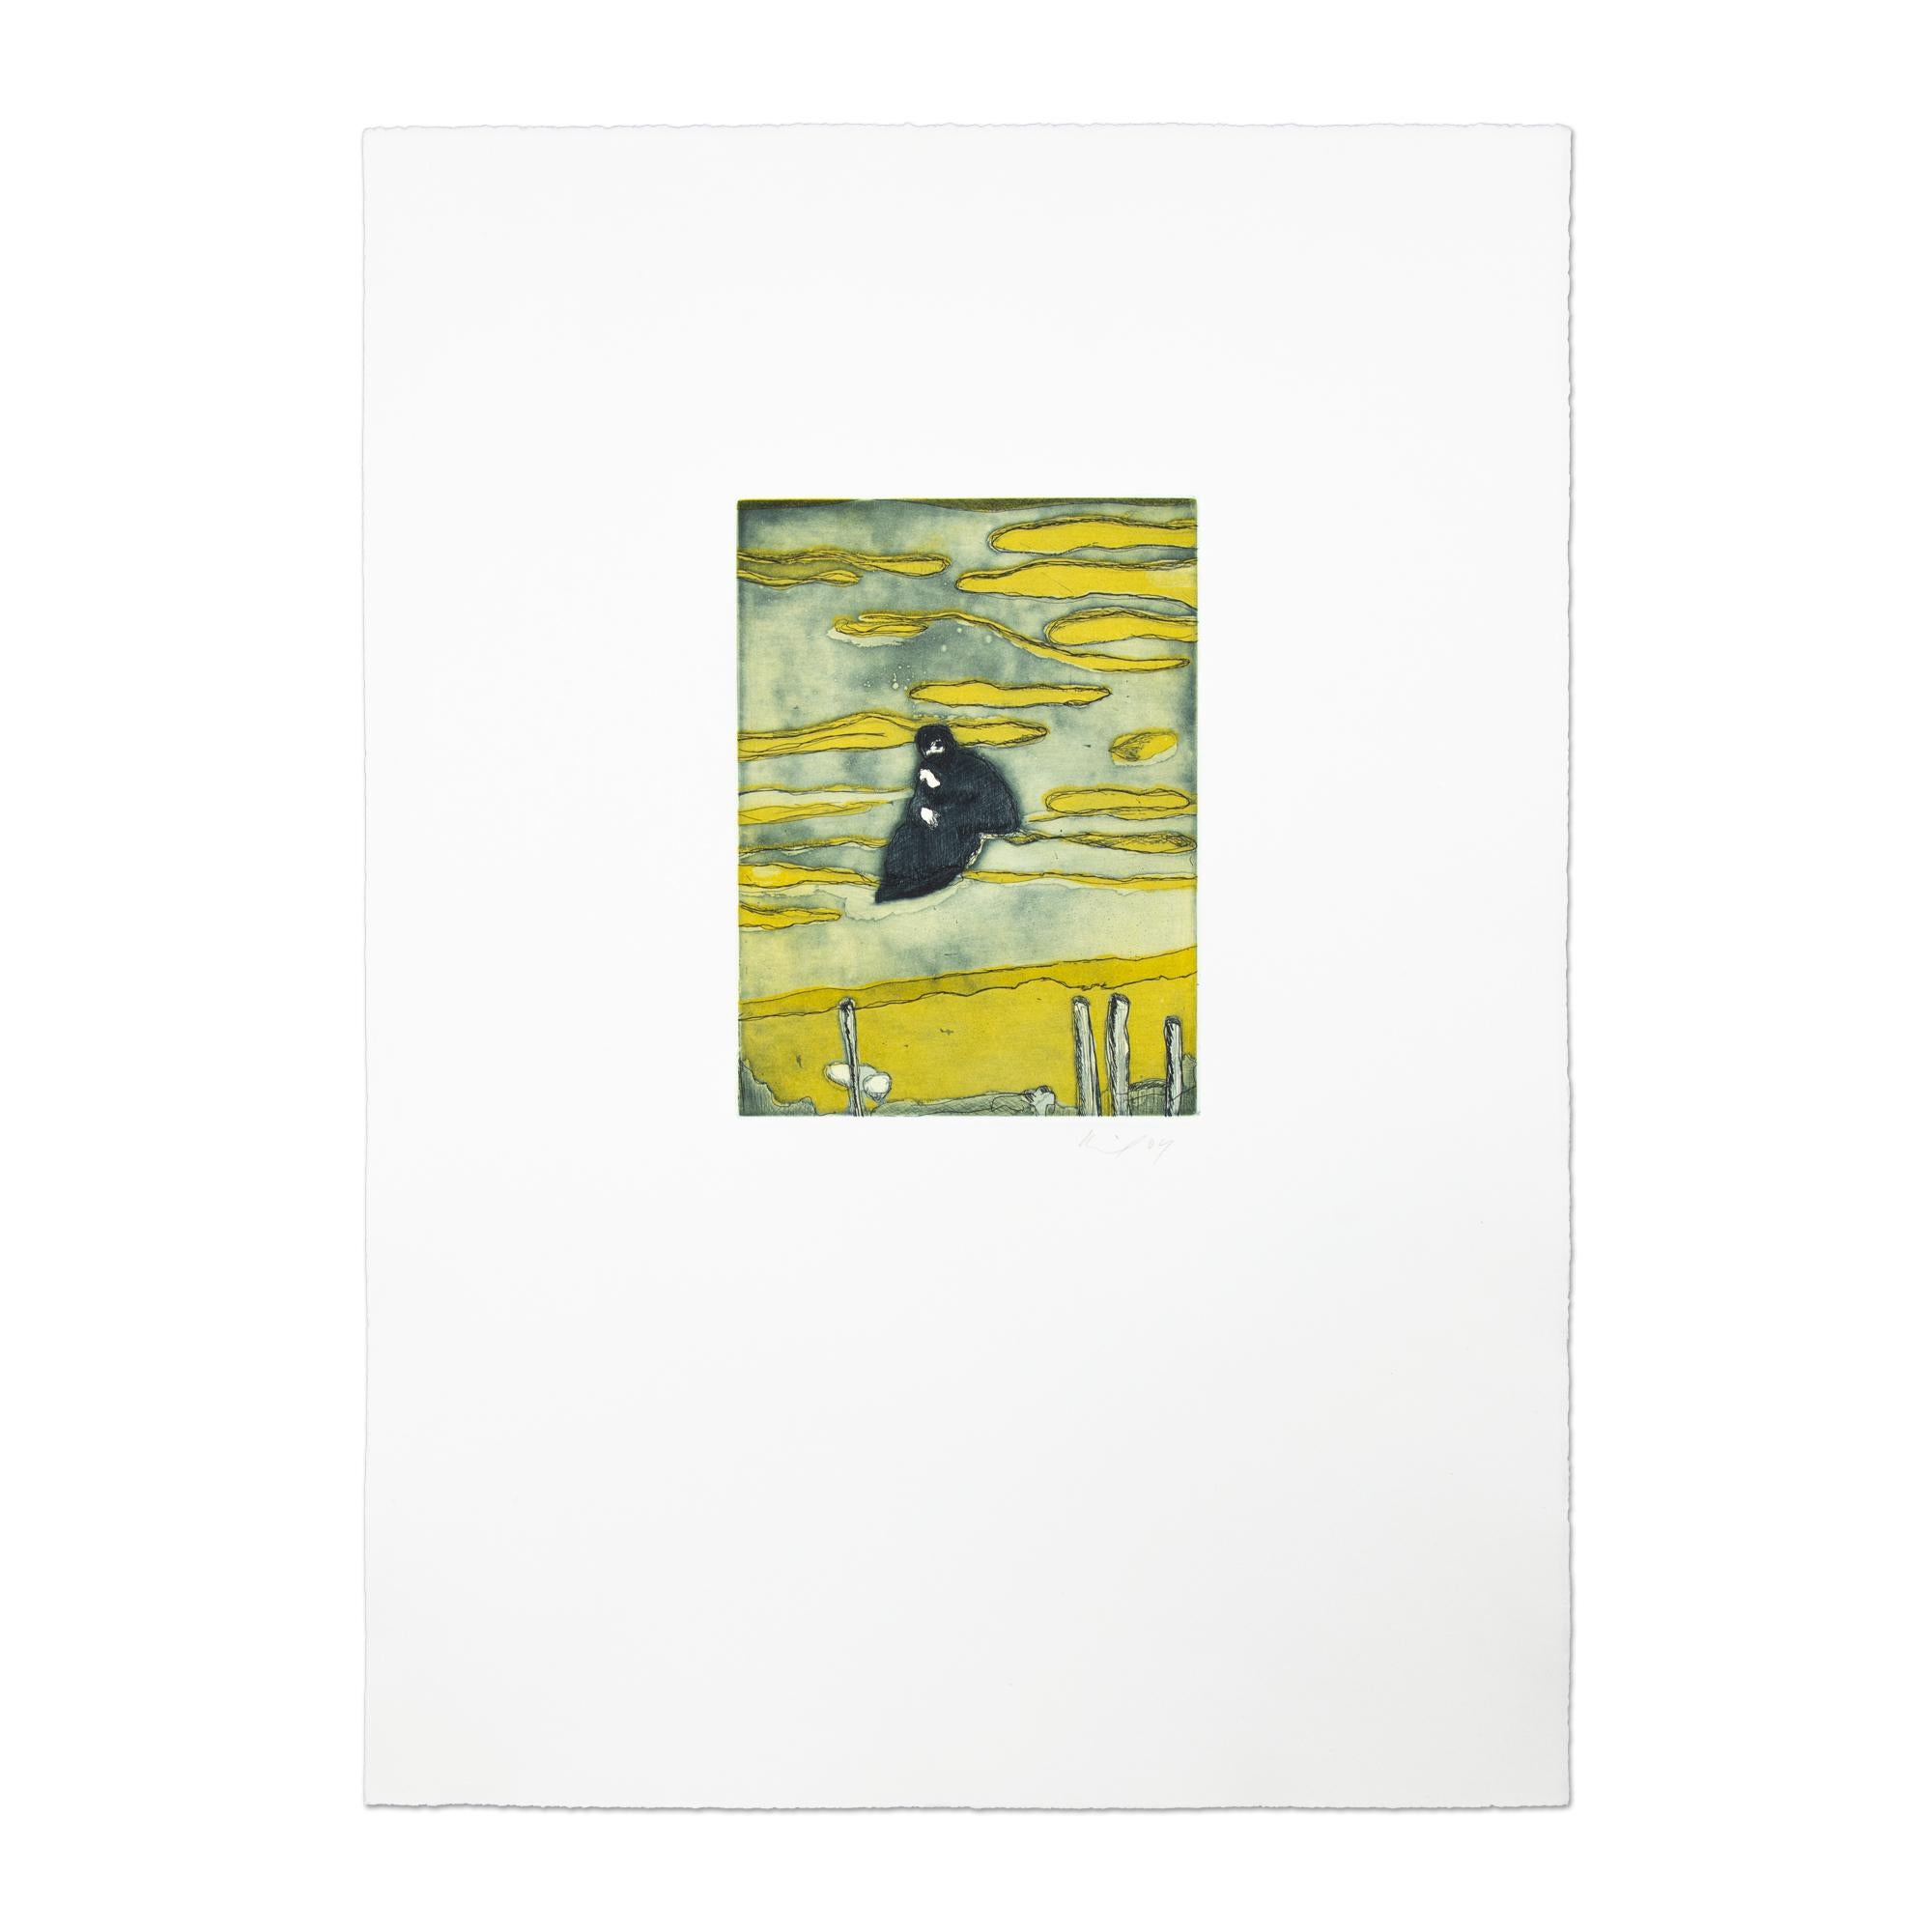 Peter Doig (geboren 1959 in Edinburgh)
Bootshaus (aus Black Palms), 2004
Medium: Radierung in Farben, auf Velinpapier
Format: 53,5 × 38 cm (21 1/10 × 15 Zoll)
Unterschrift: Handsigniert und datiert mit Bleistift
Zustand: Ausgezeichnet